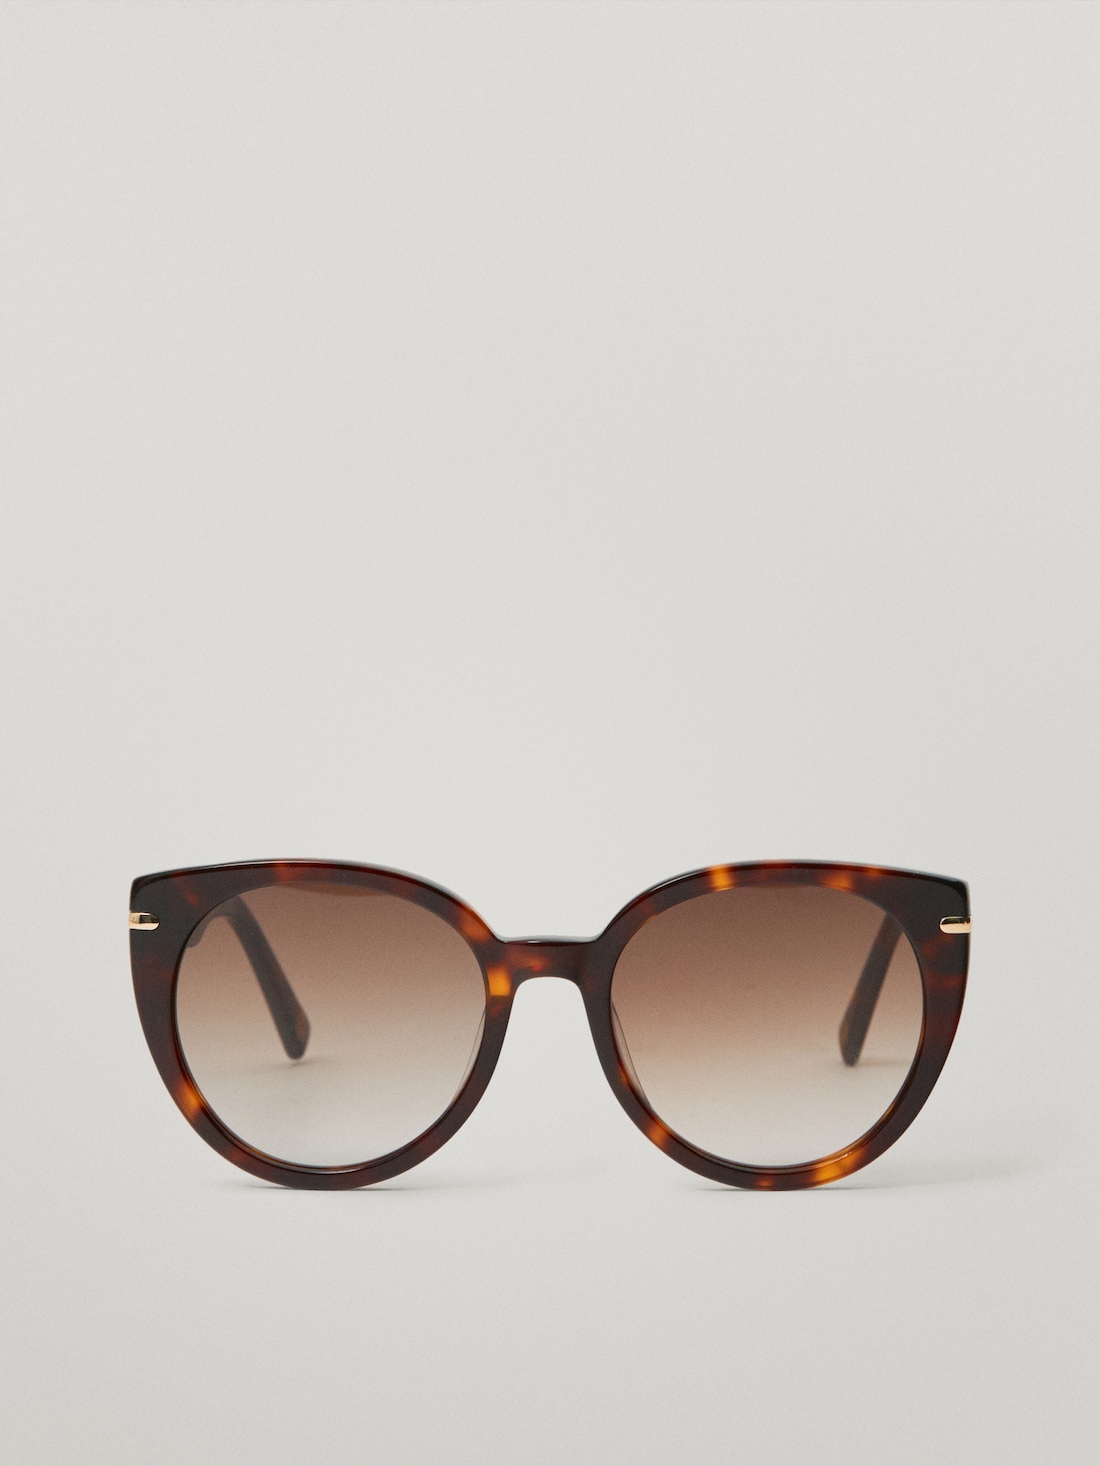 КОРИЧНЕВЫЙ Cолнцезащитные очки в оправе «cat eye» Massimo Dutti